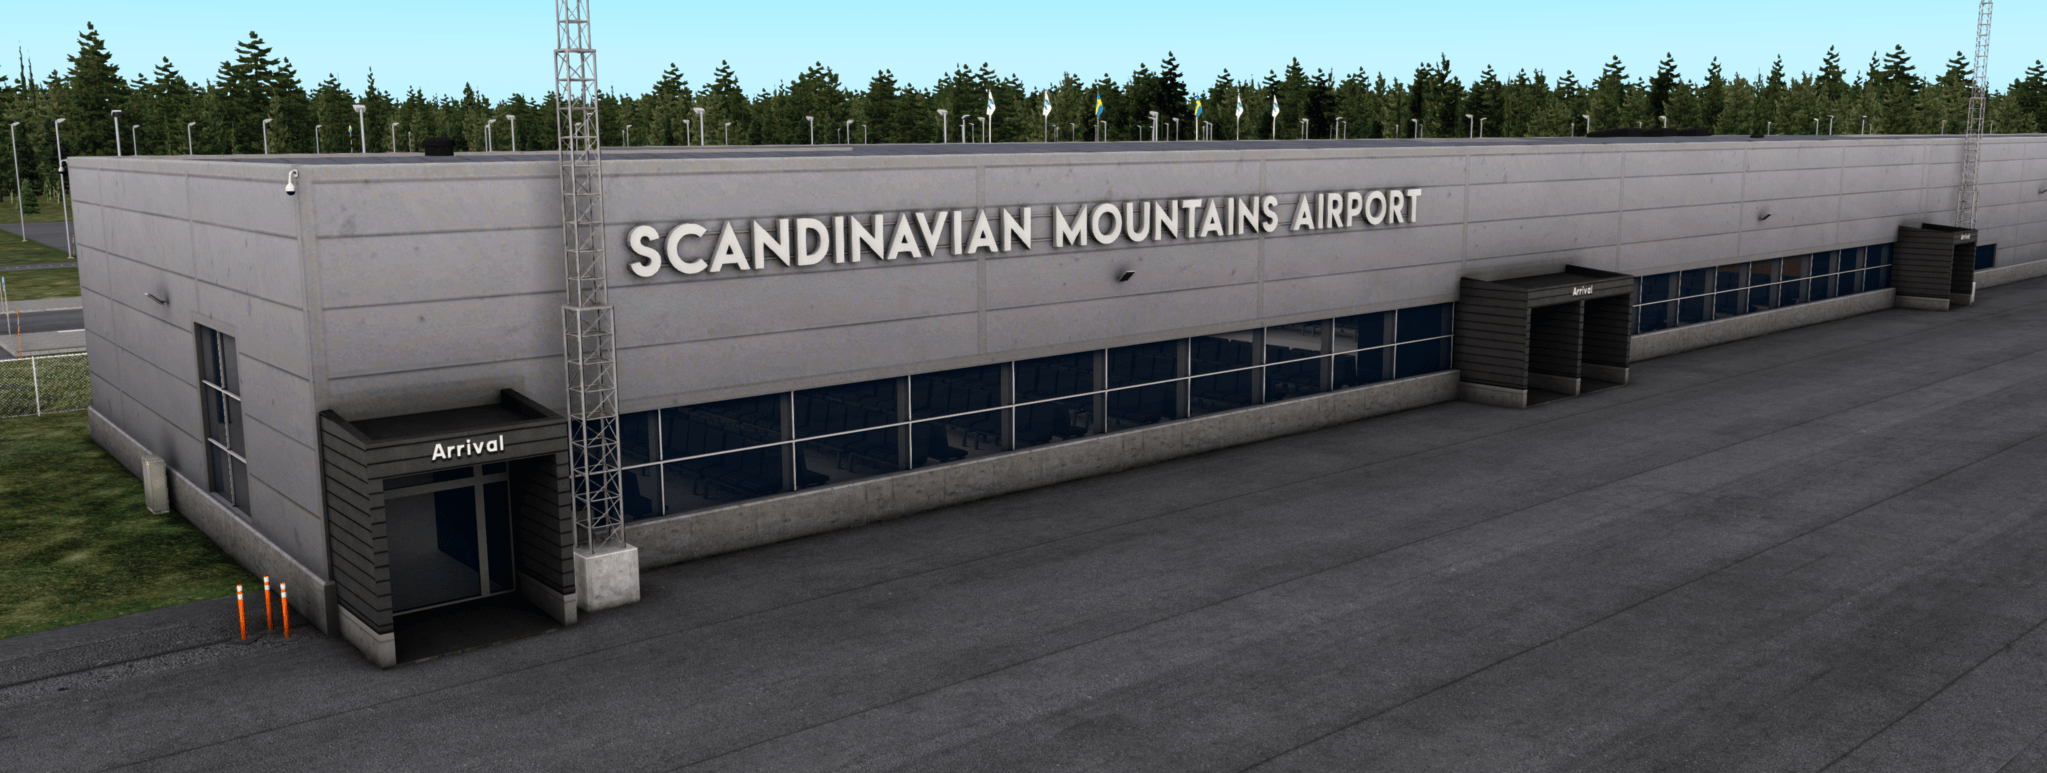 scandinavian mountains airport